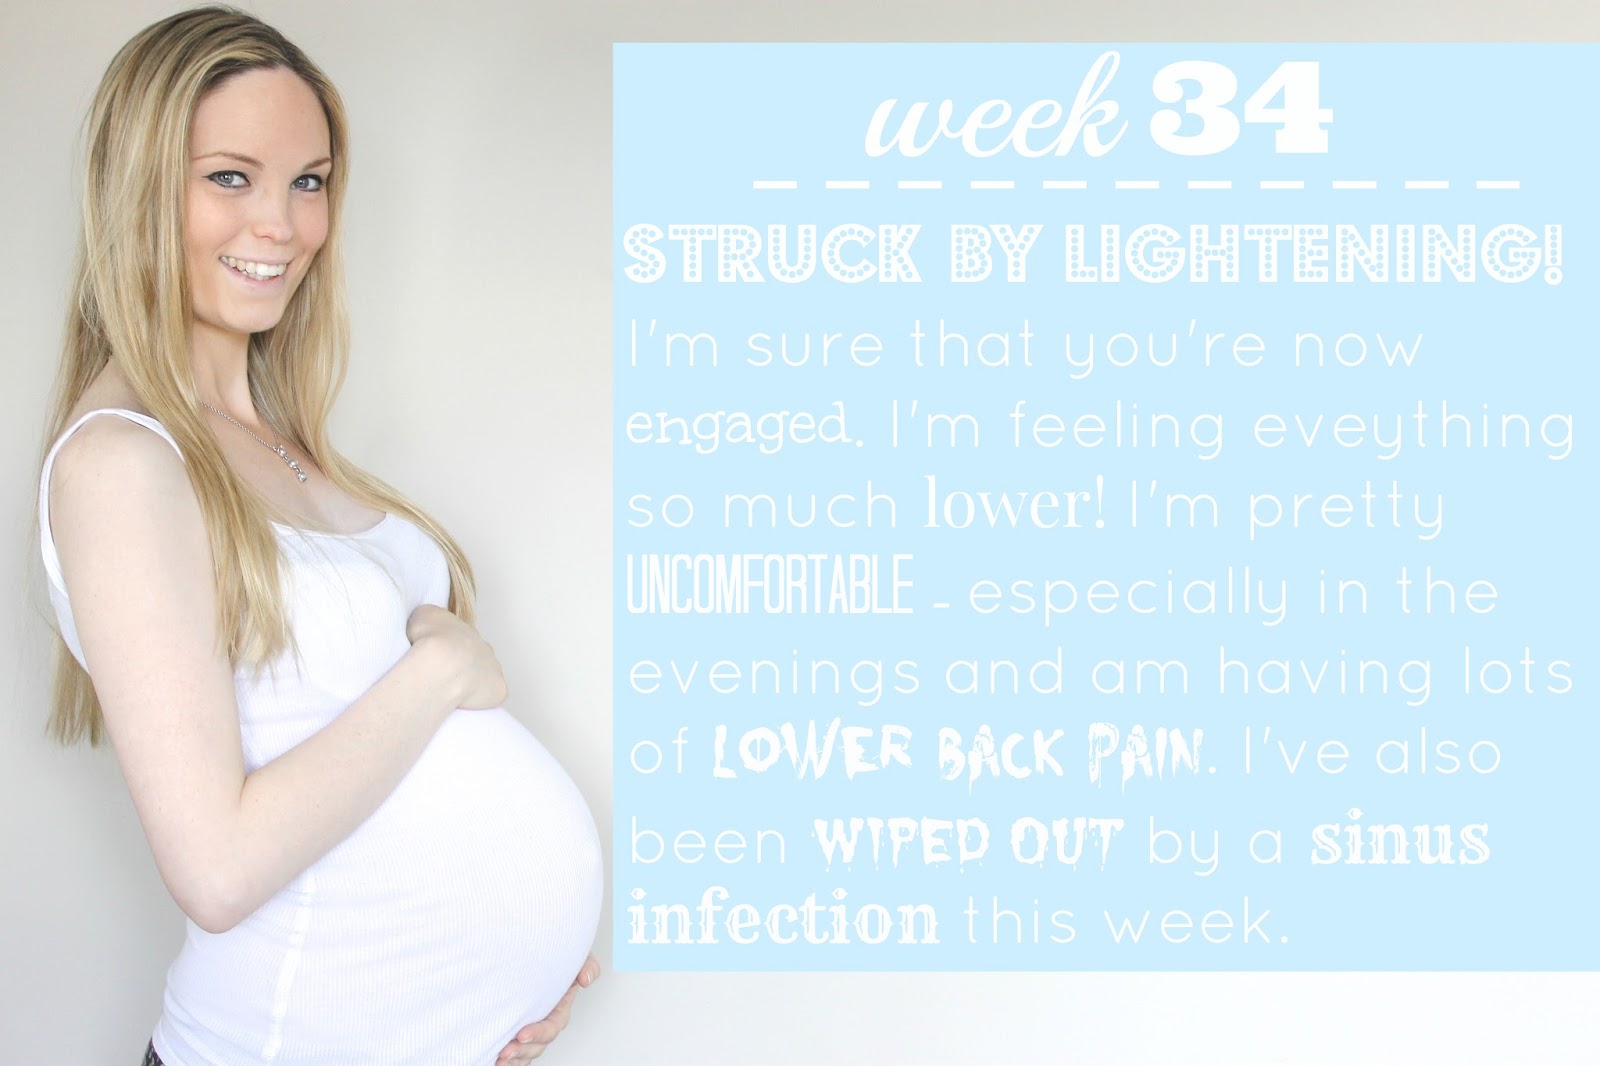 34 weeks pregnant,